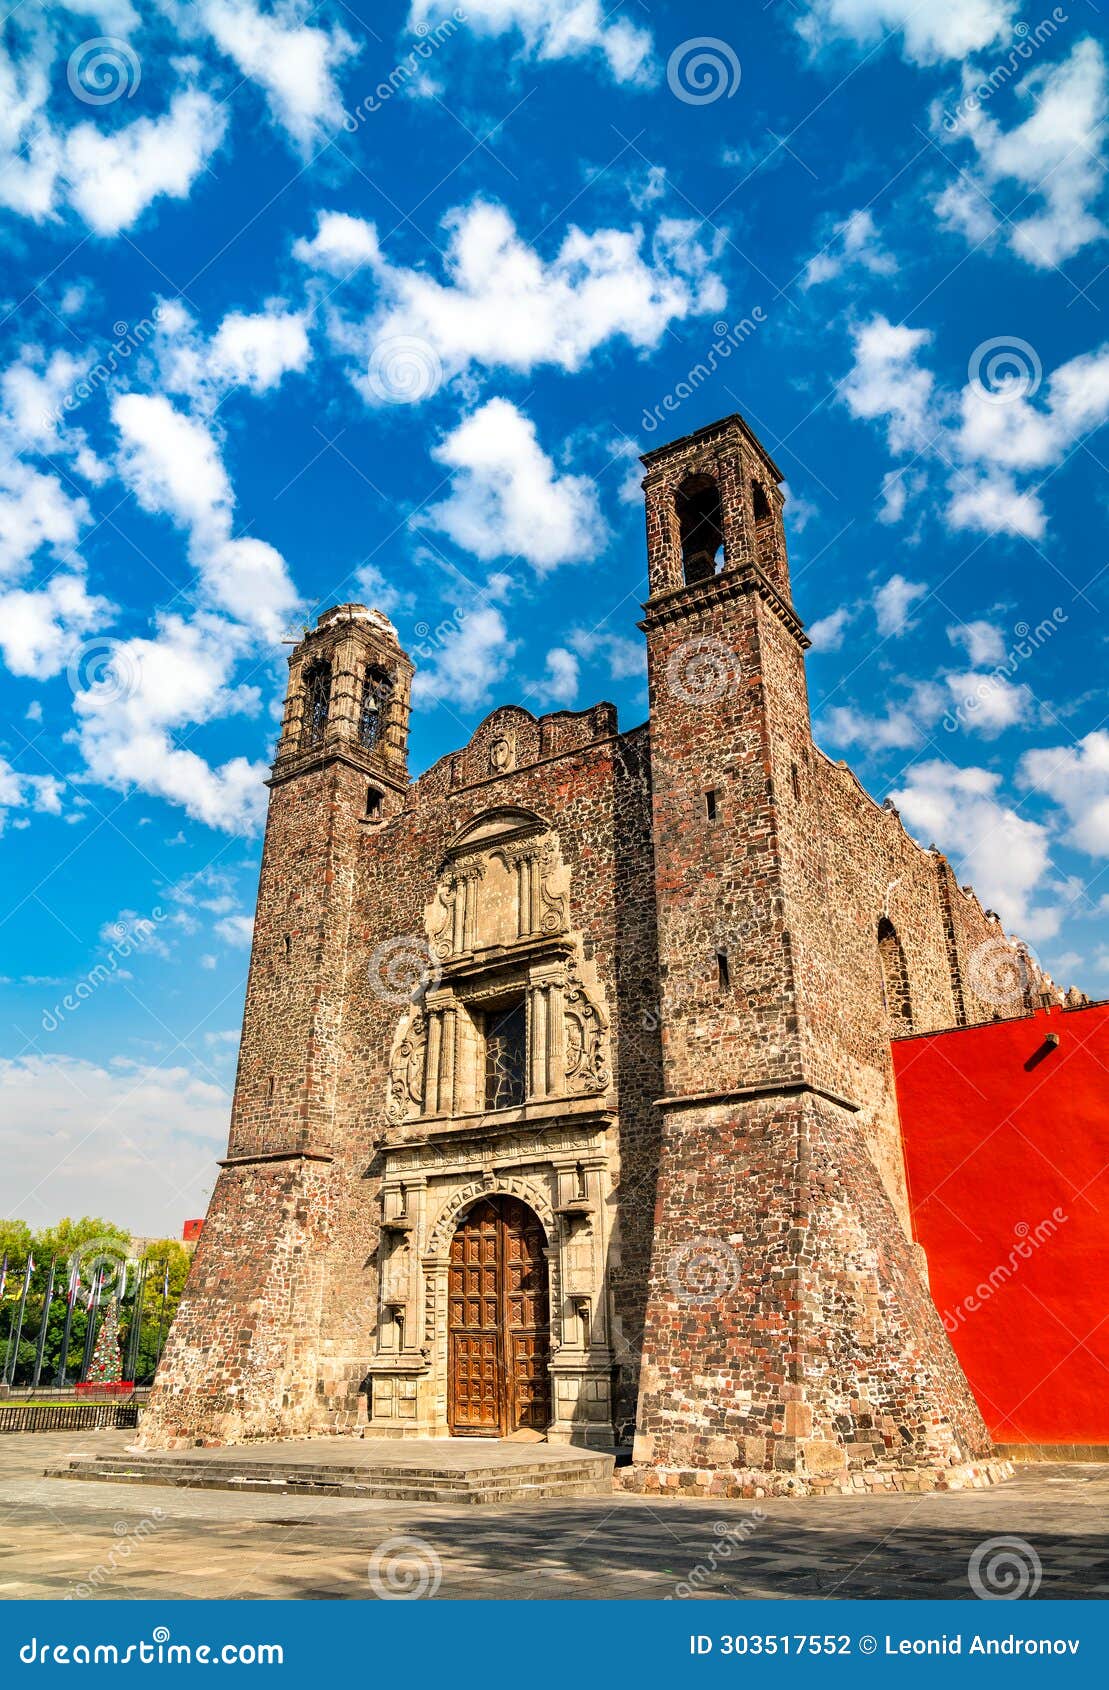 temple of santiago at tlatelolco - mexico city, mexico